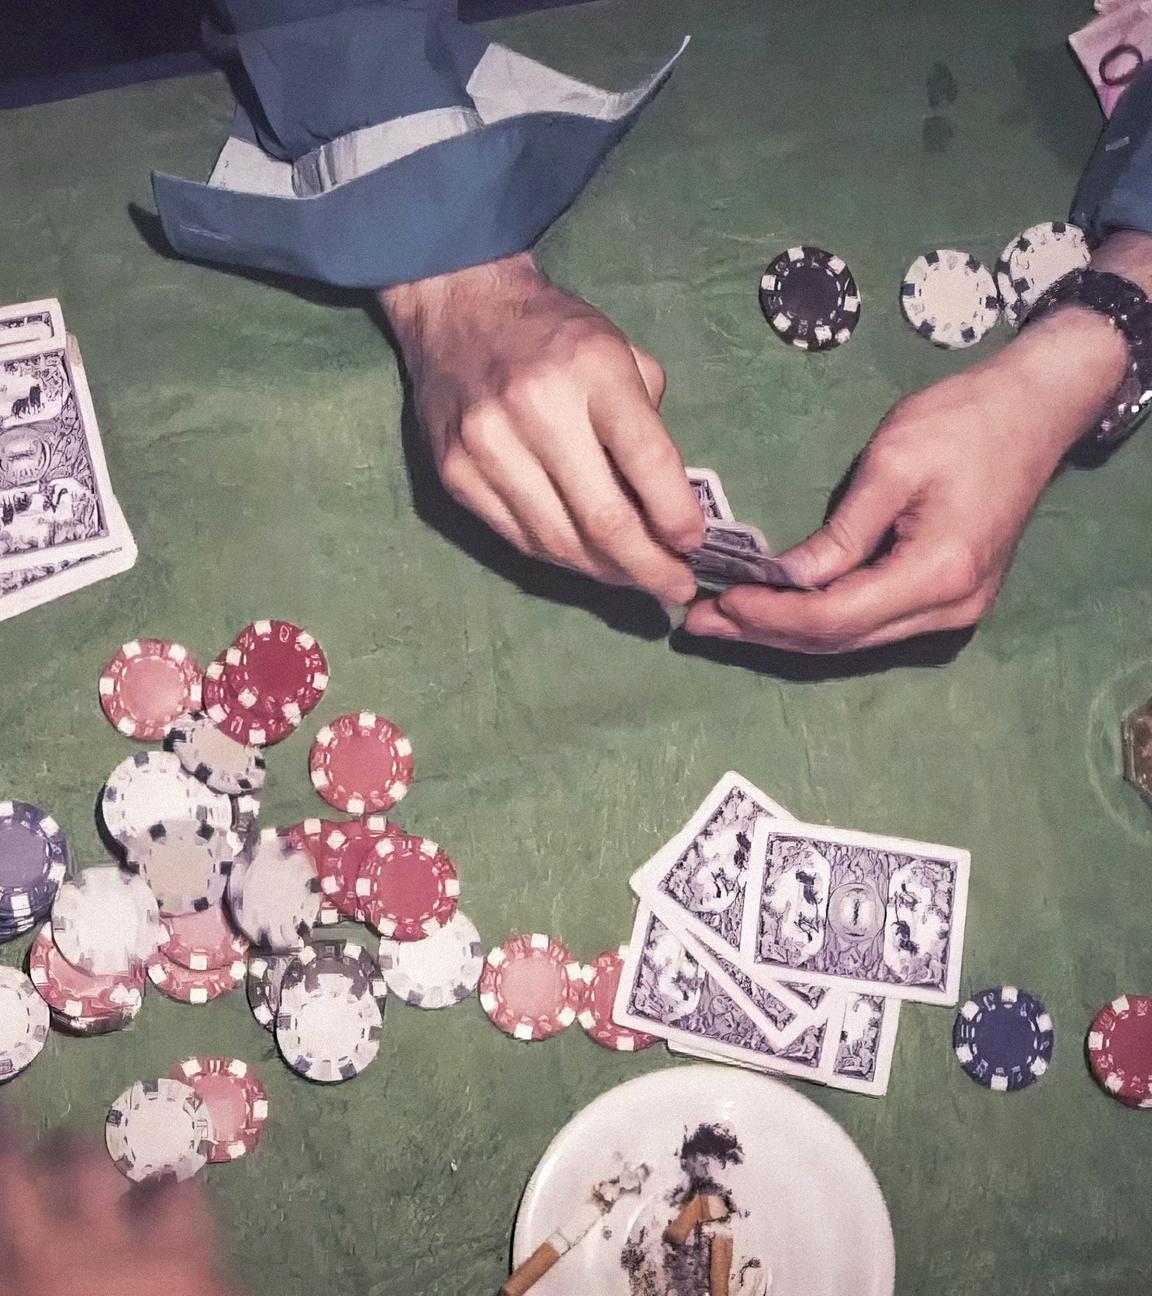 Blick von oben auf einen Tisch: Auf dem Tisch liegen neben Händen, die Spielkarten halten, weitere Spielkarten und Pokerchips. Daneben stehen Gläser und ein Aschenbecher.